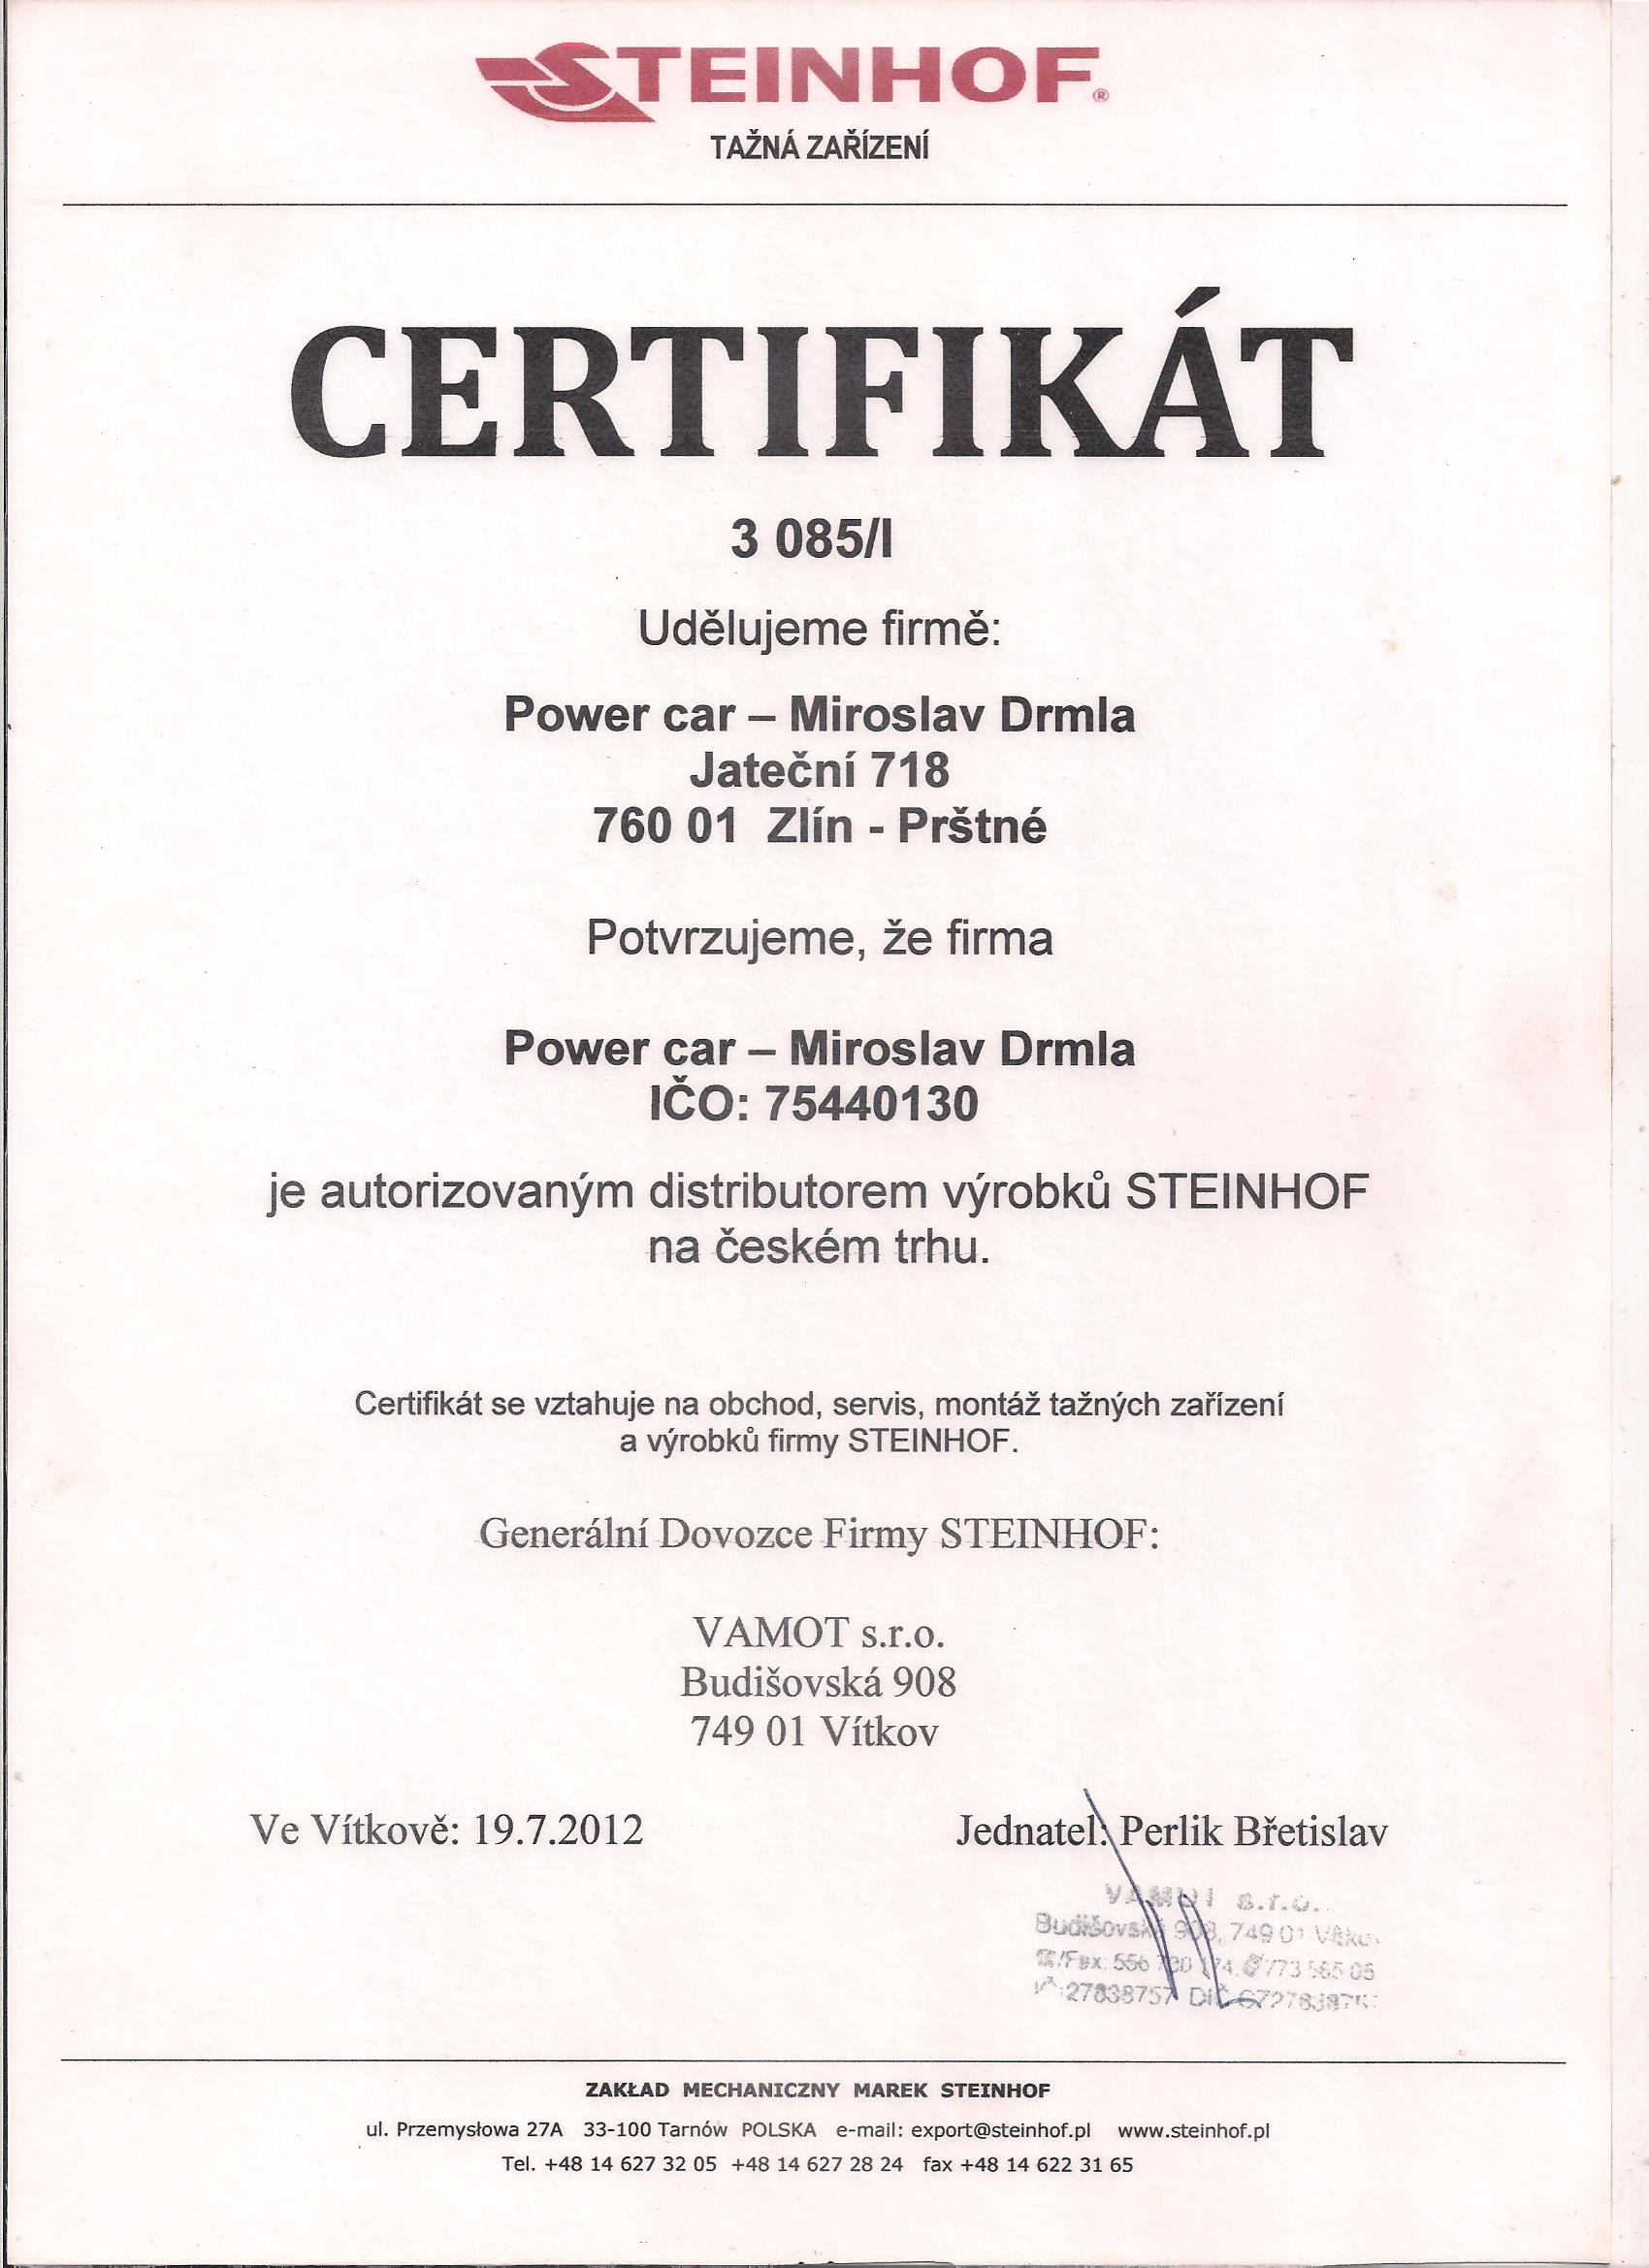 Certifikát STEINHOF - tažná zařízení